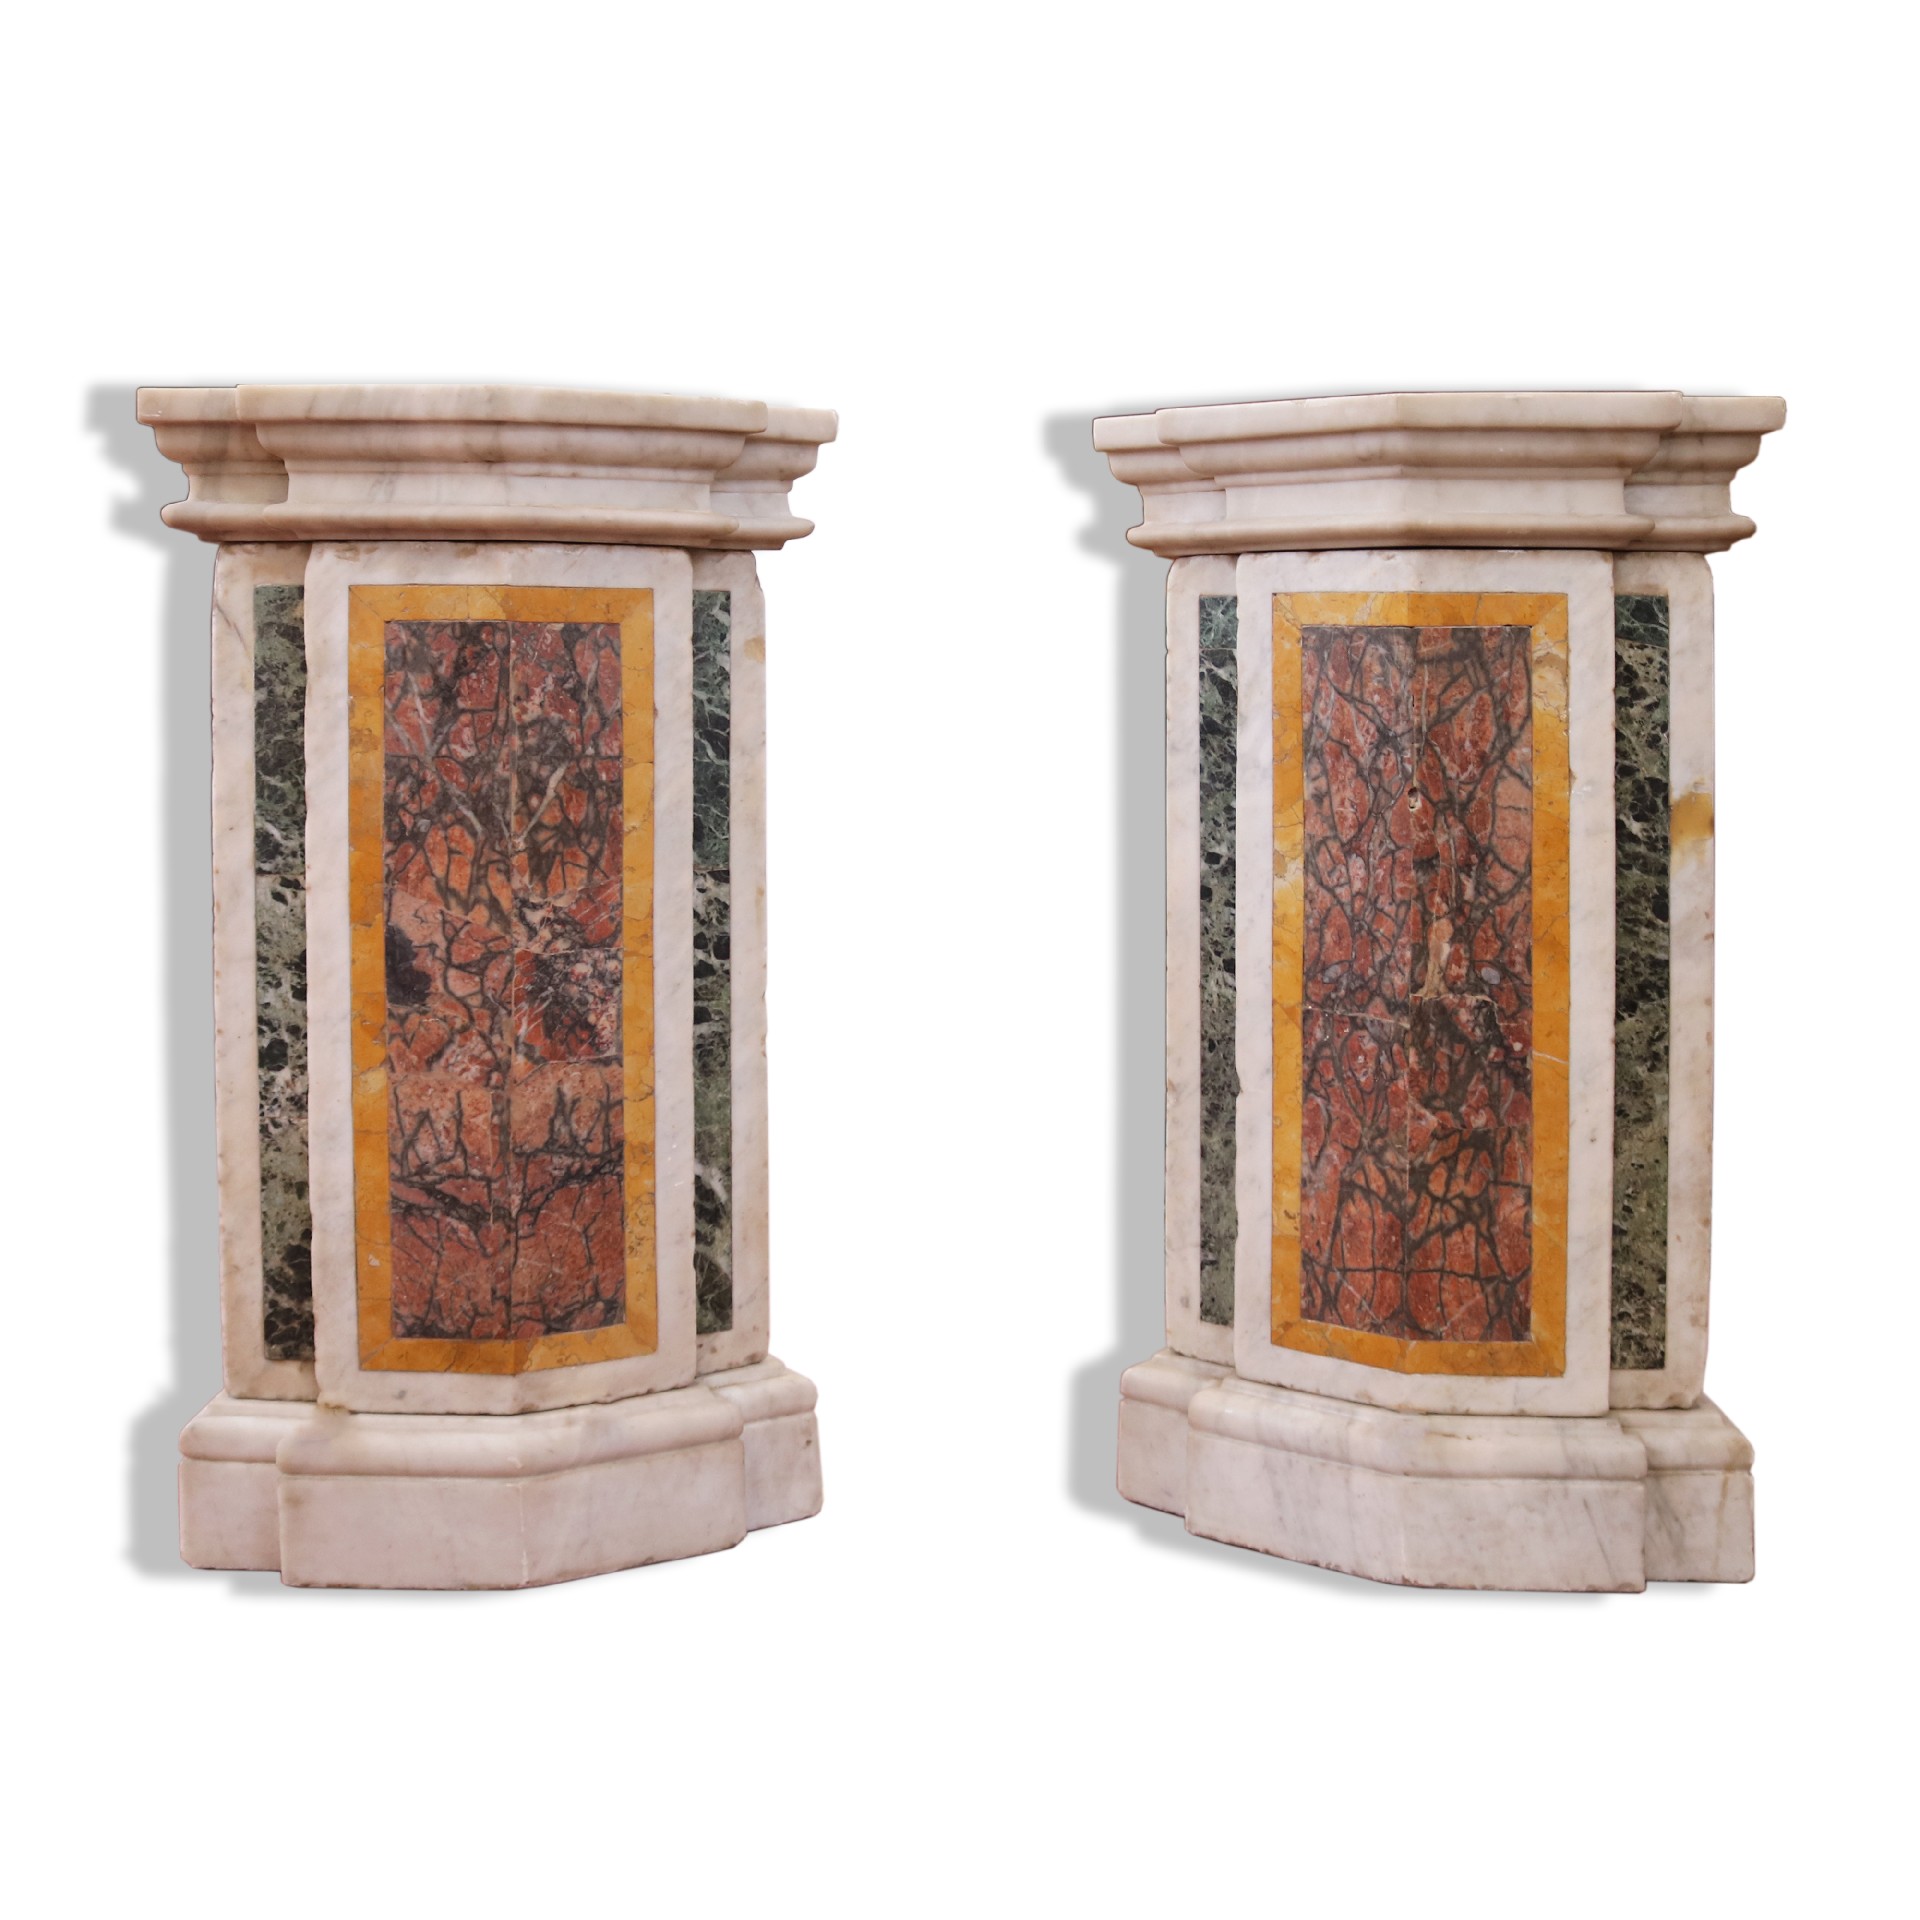 Antica coppia di basi in marmo. - Tavoli in vari materiali - Tavoli e complementi - Prodotti - Antichità Fiorillo